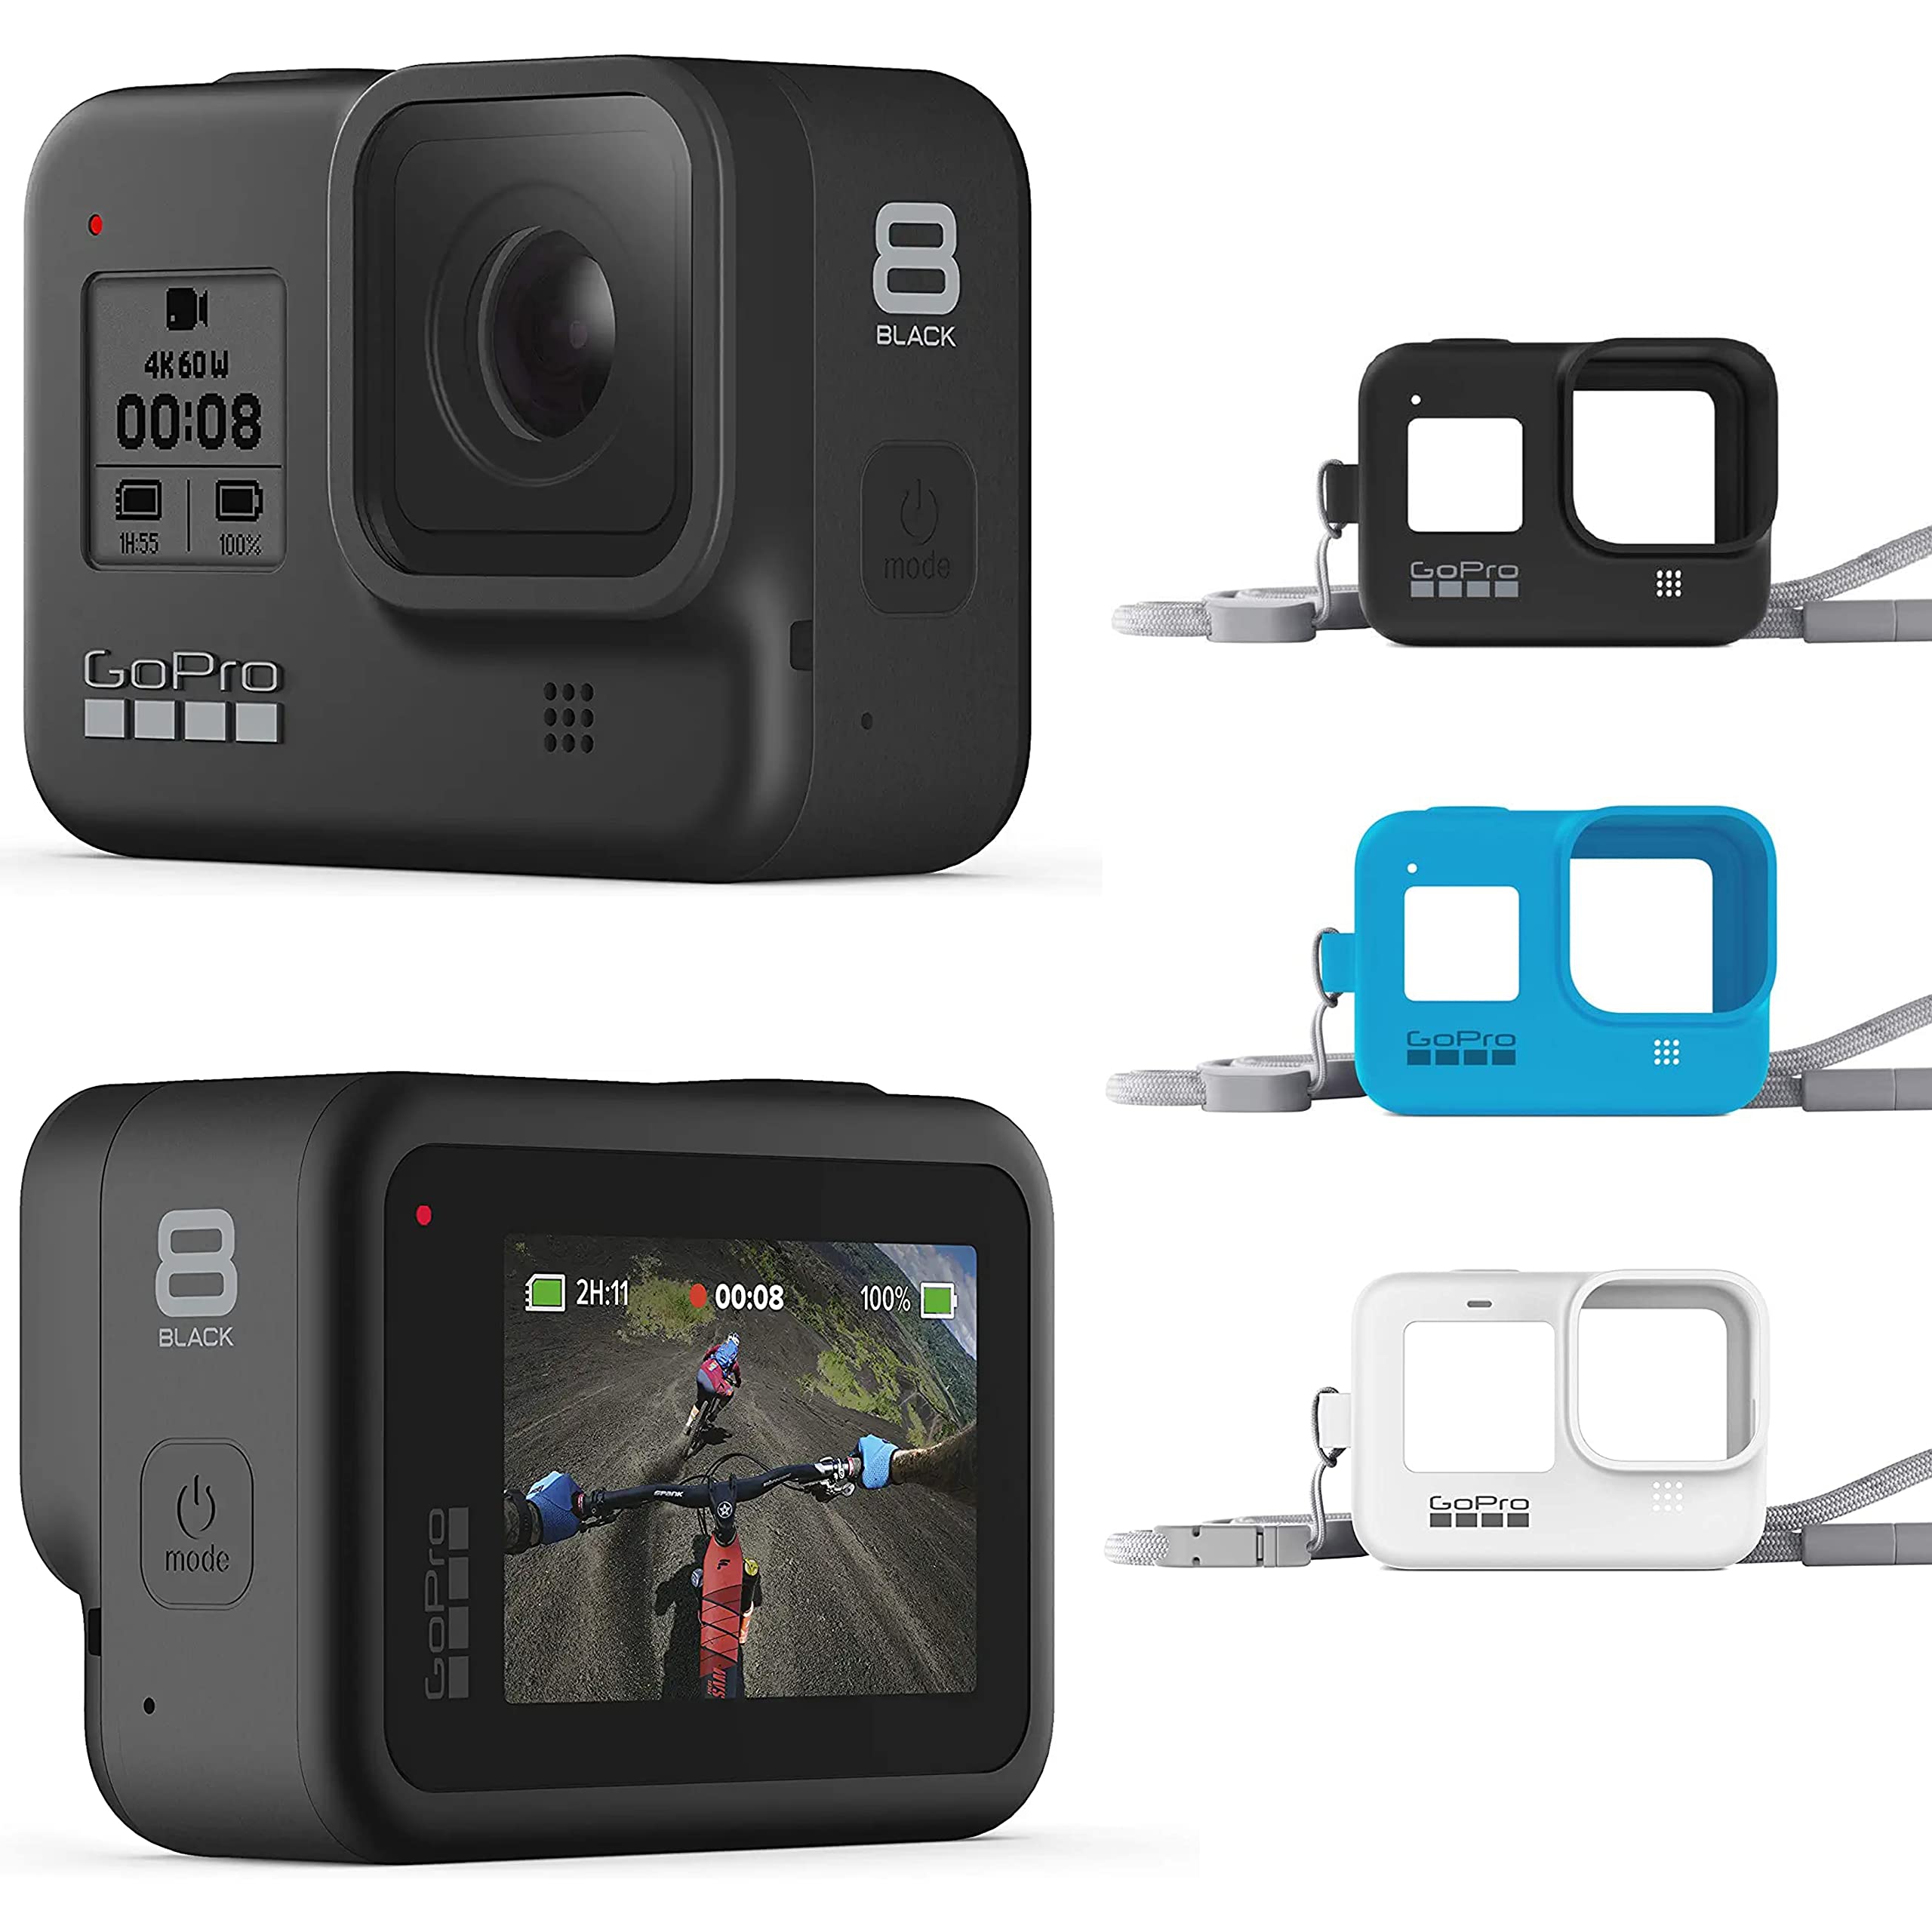 GoPro HERO8 Black E-Commerce Packaging - Waterproof Digital Action